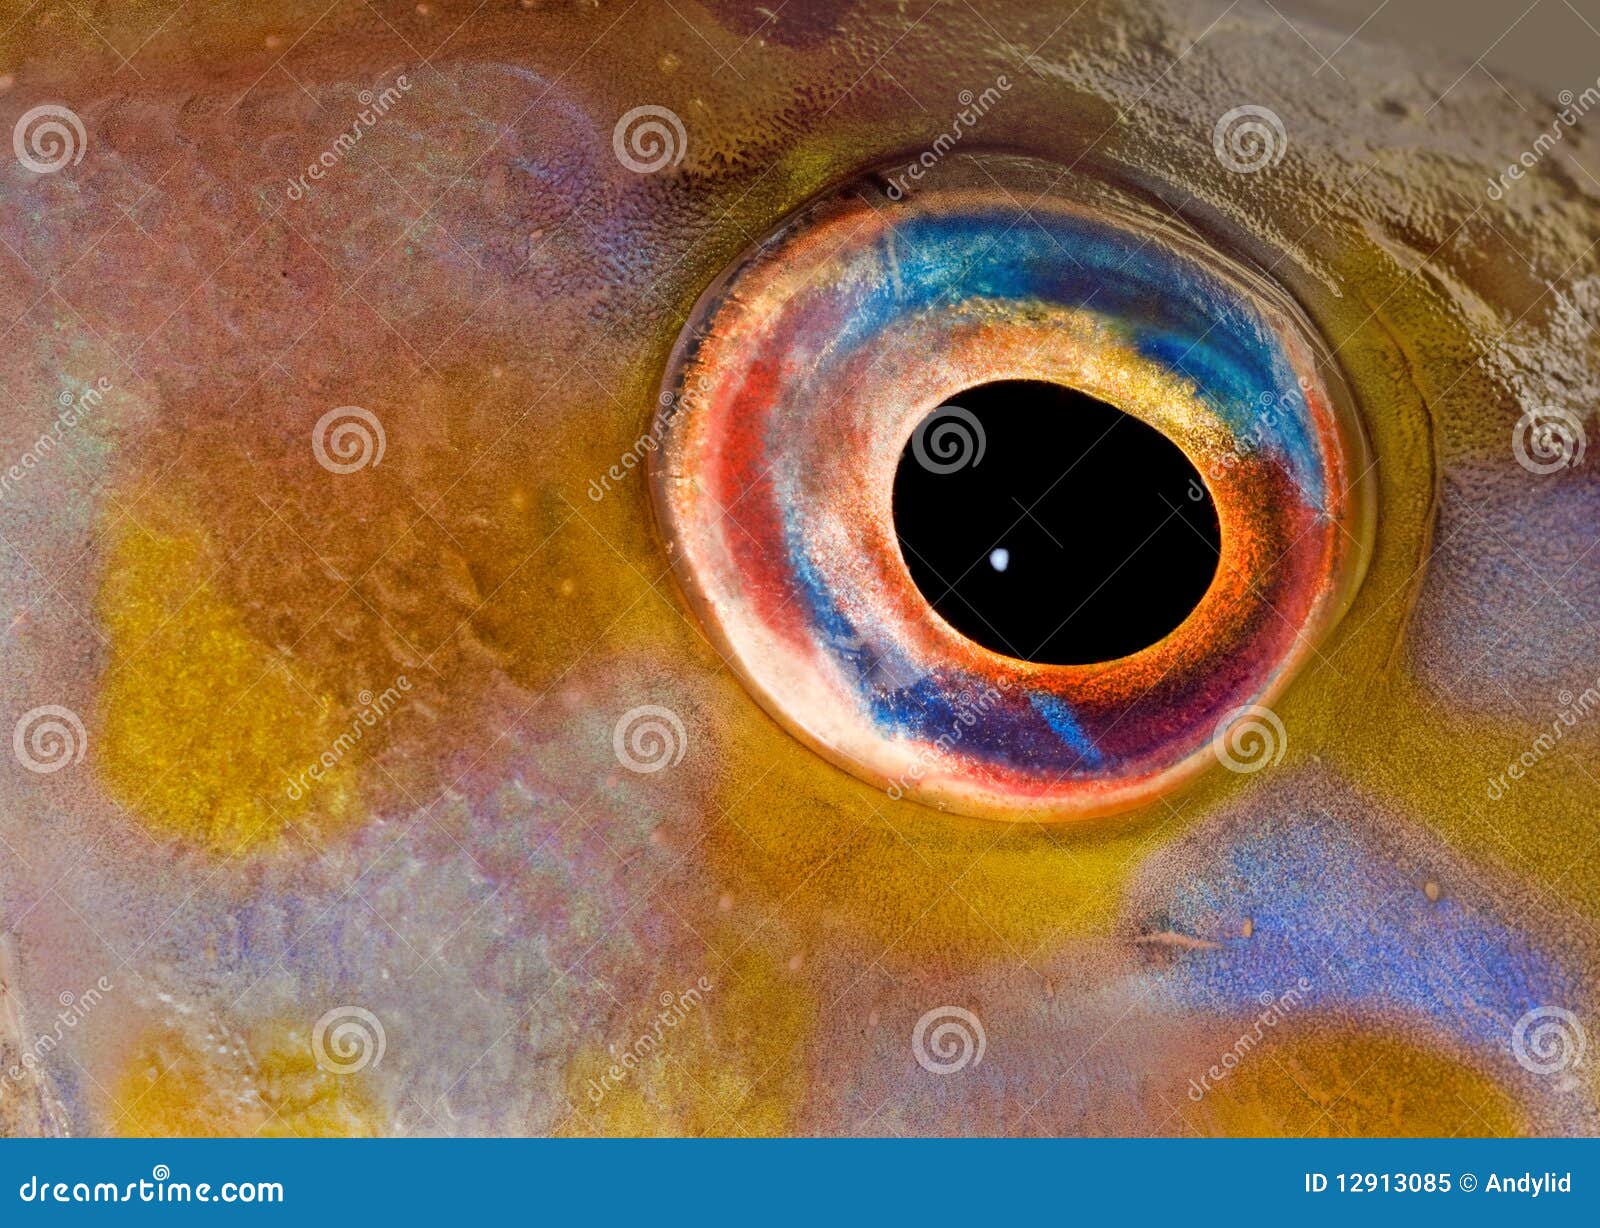 Ем глаза рыбы. Глаз рыбы. Органы зрения рыб. Строение глаза рыбы. Цветное зрение у рыб.